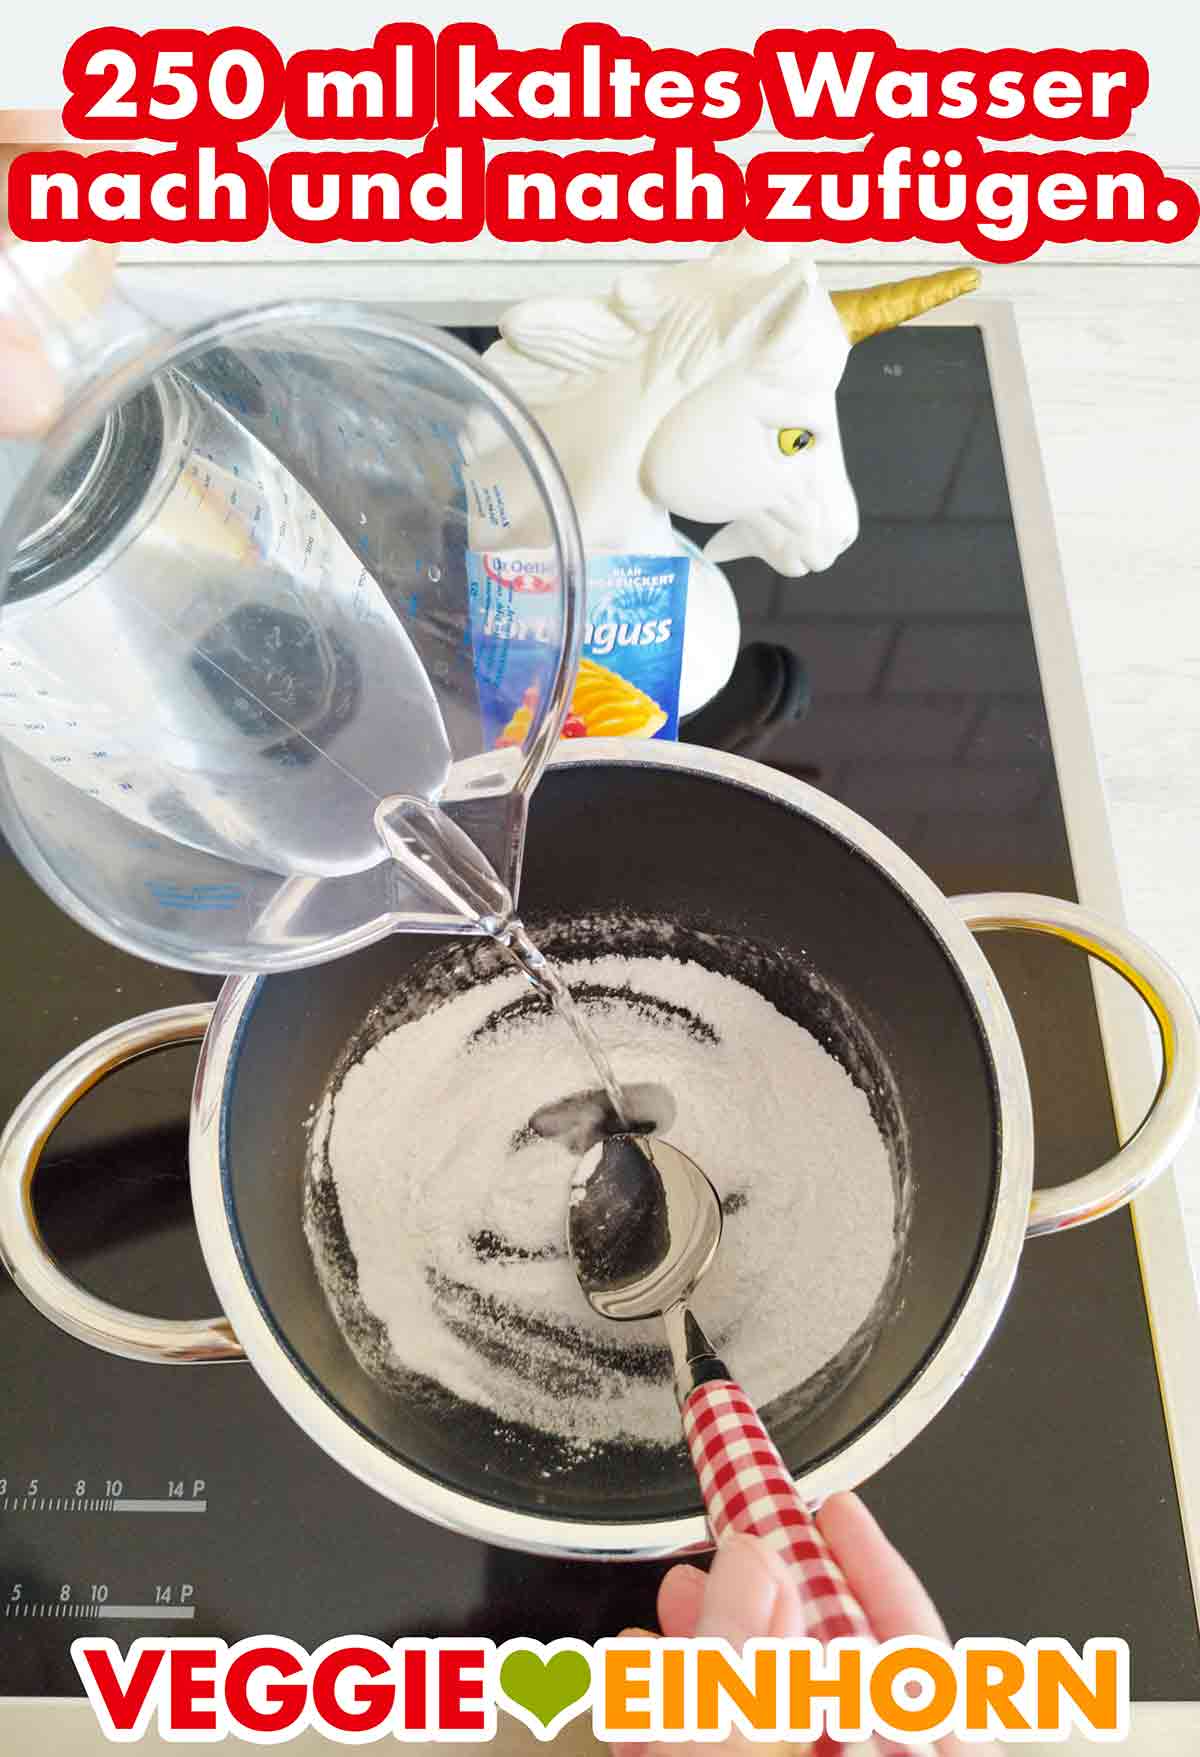 Wasser wird aus einem Messbecher in den Topf mit dem Tortenguss Pulver gegossen.